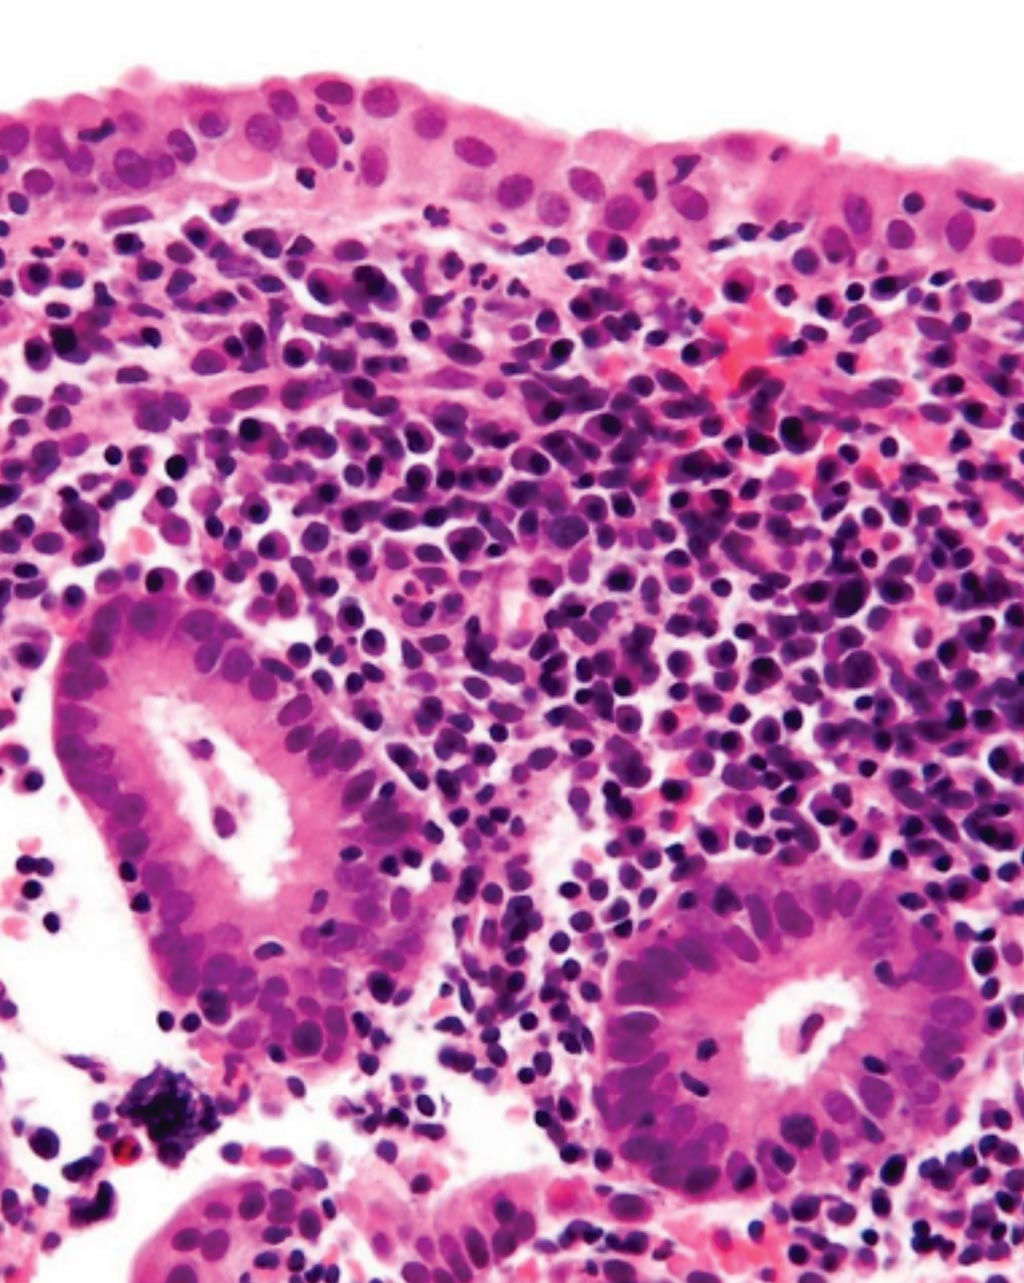 Imagen: Una micrografía histológica que muestra el endometrio con células plasmáticas abundantes, que son diagnósticas para la endometritis crónica y con neutrófilos dispersos (Fotografía cortesía de Nephron).